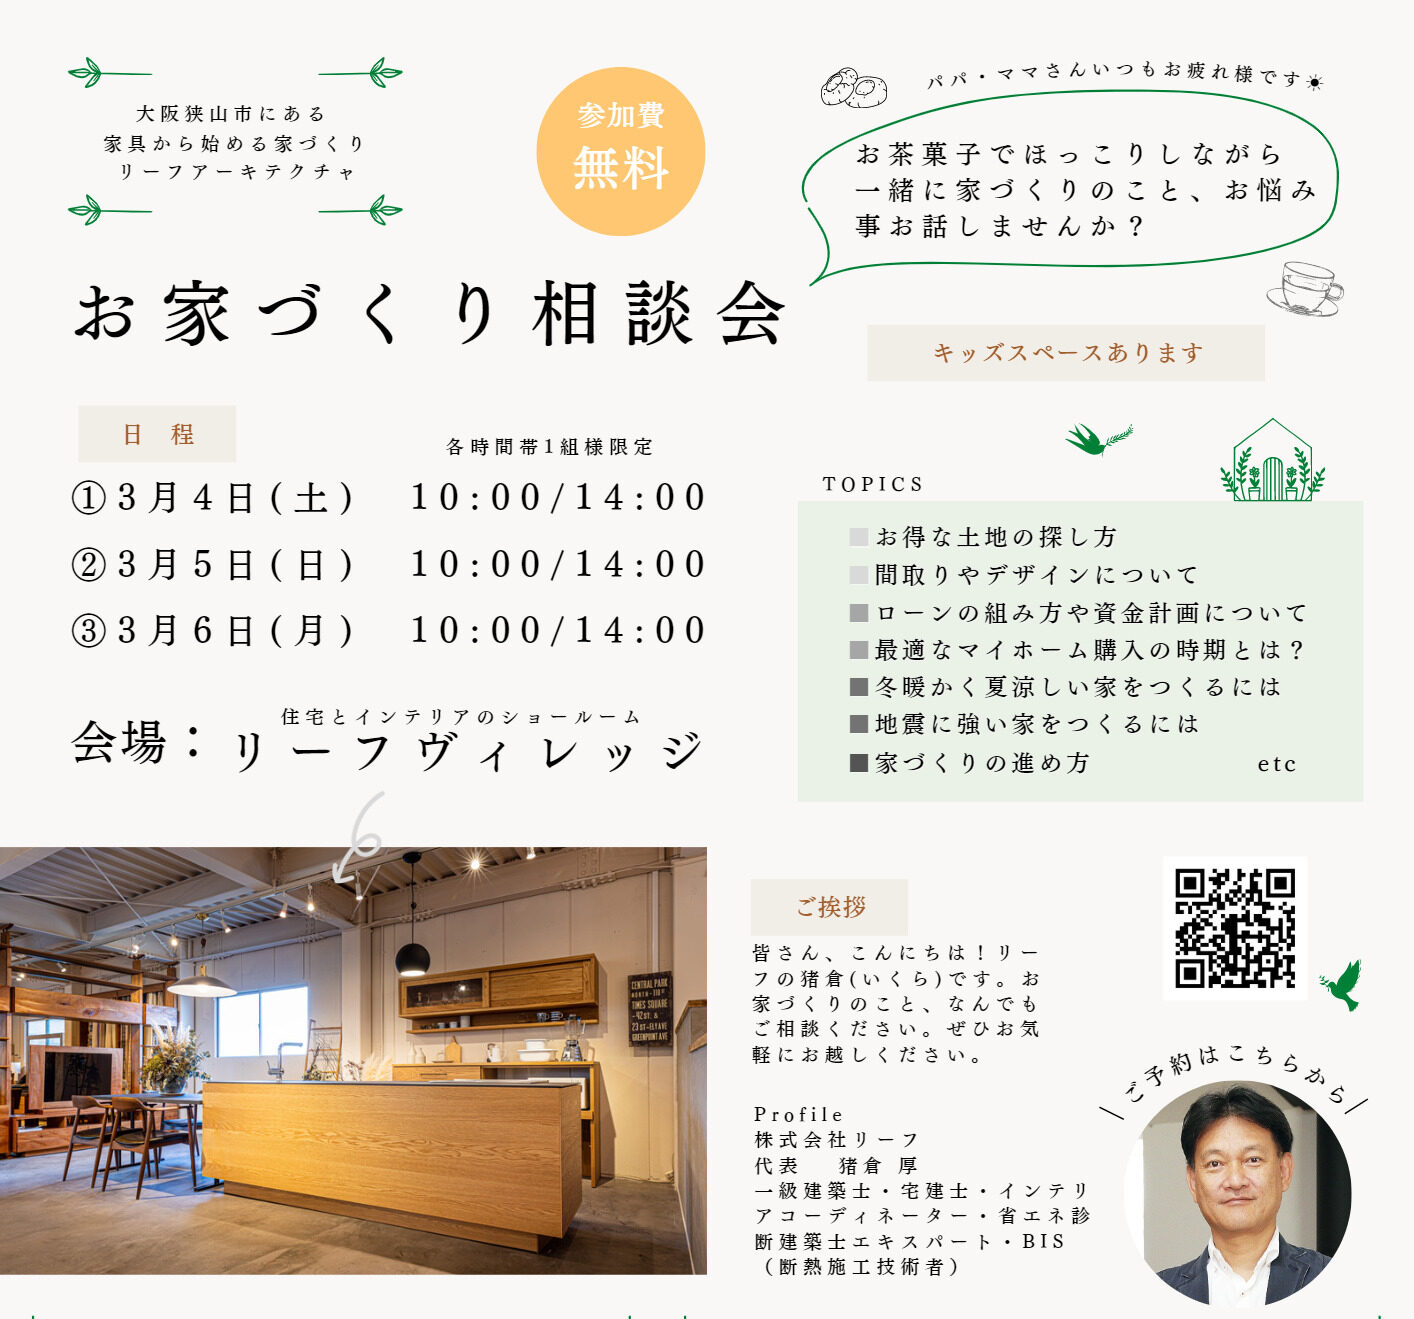 お家づくり相談会、大阪狭山ショールームにて開催 | 大阪の高性能住宅はリーフアーキテクチャへ